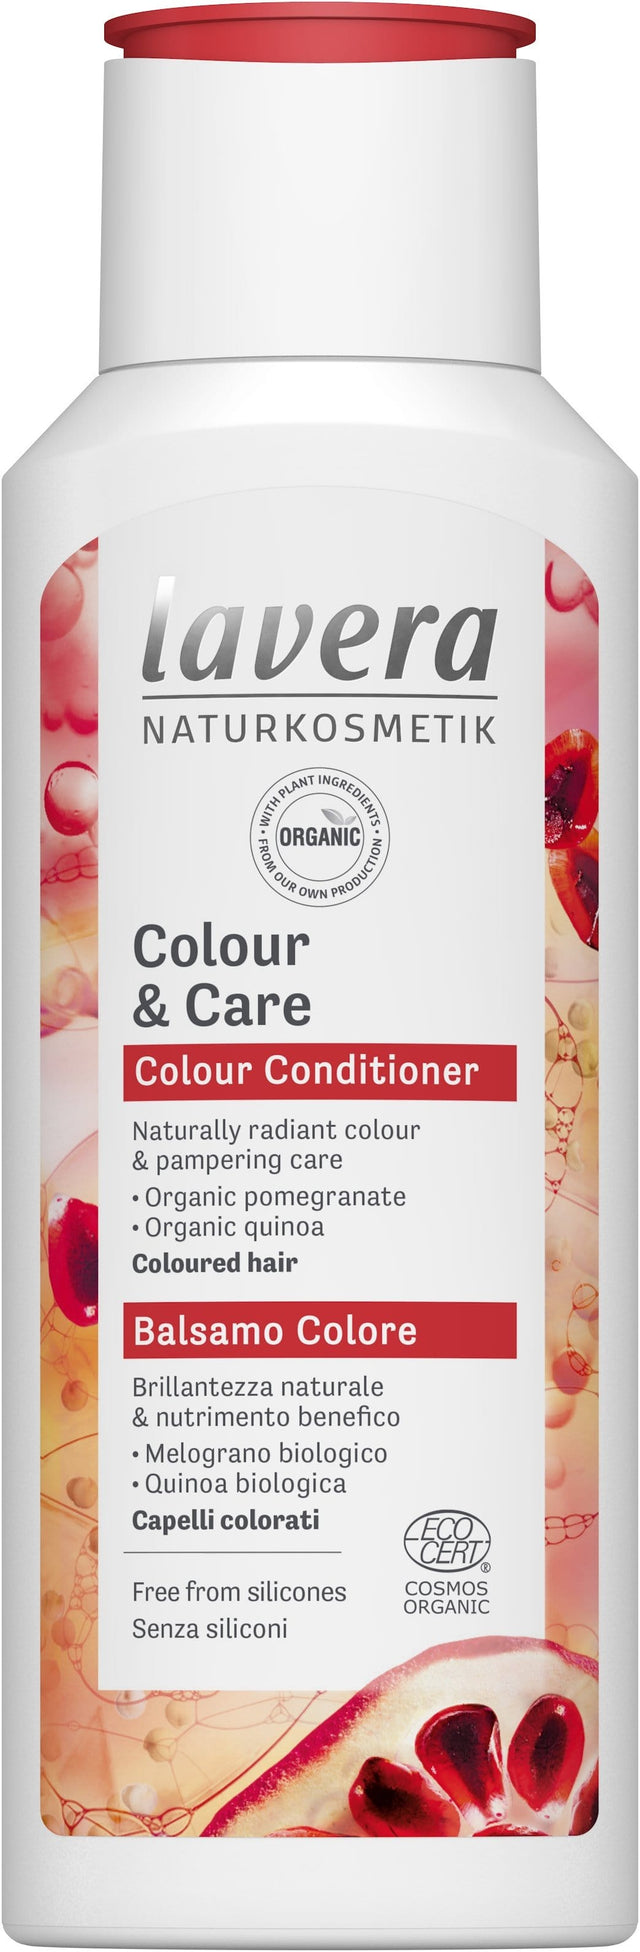 Lavera Colour & Care Conditioner, 200ml